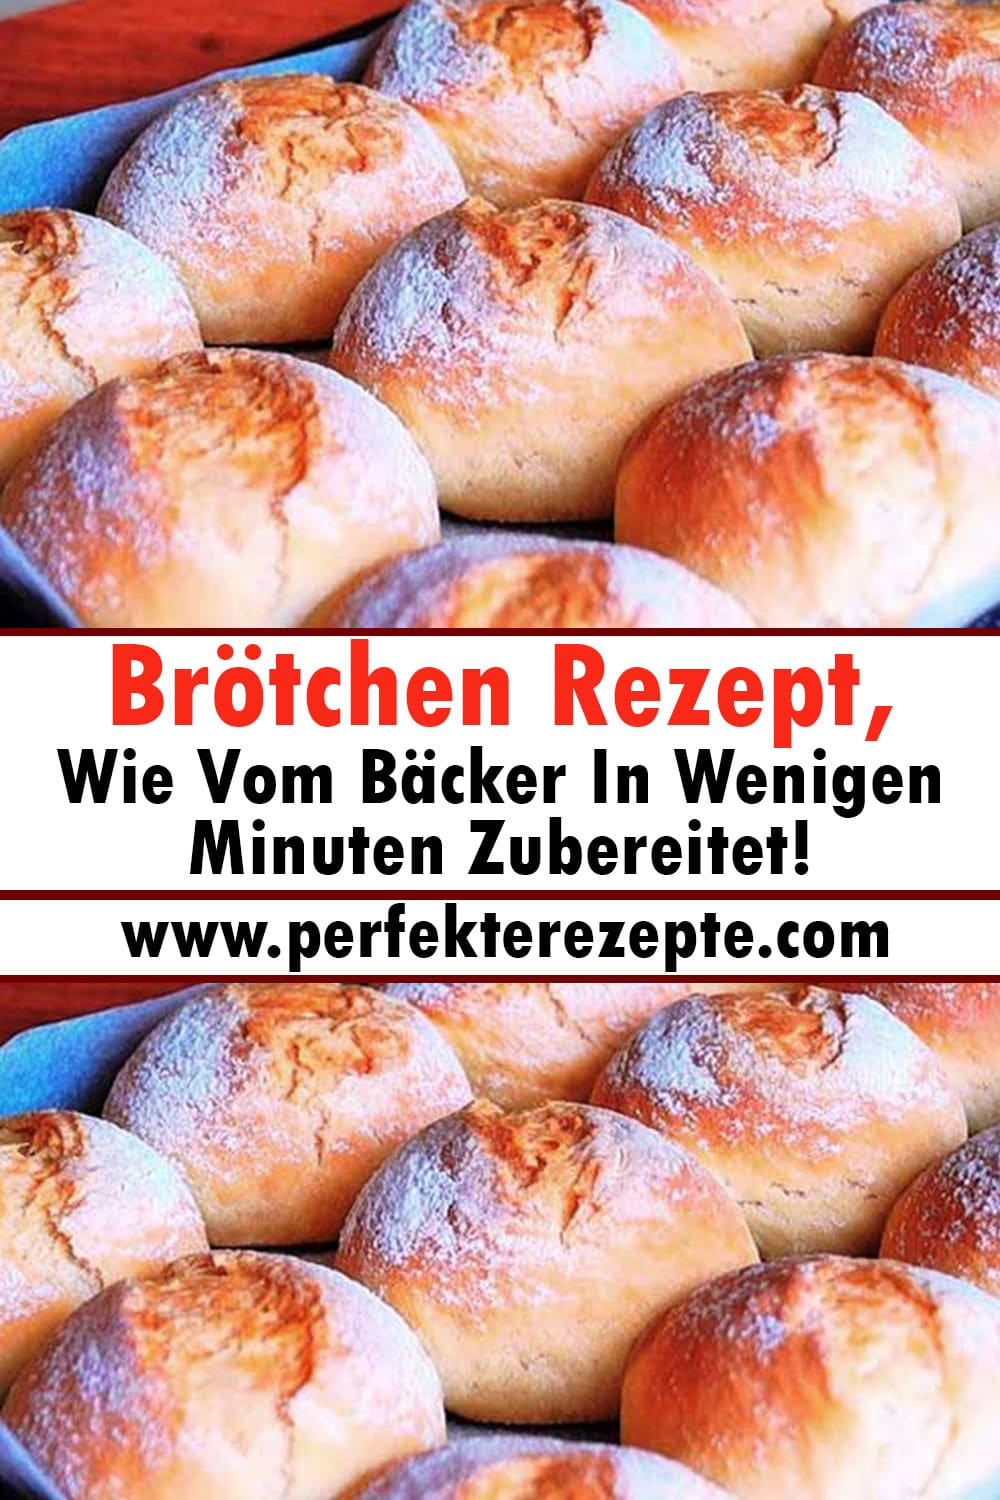 Brötchen Rezept, Wie Vom Bäcker In Wenigen Minuten Zubereitet!